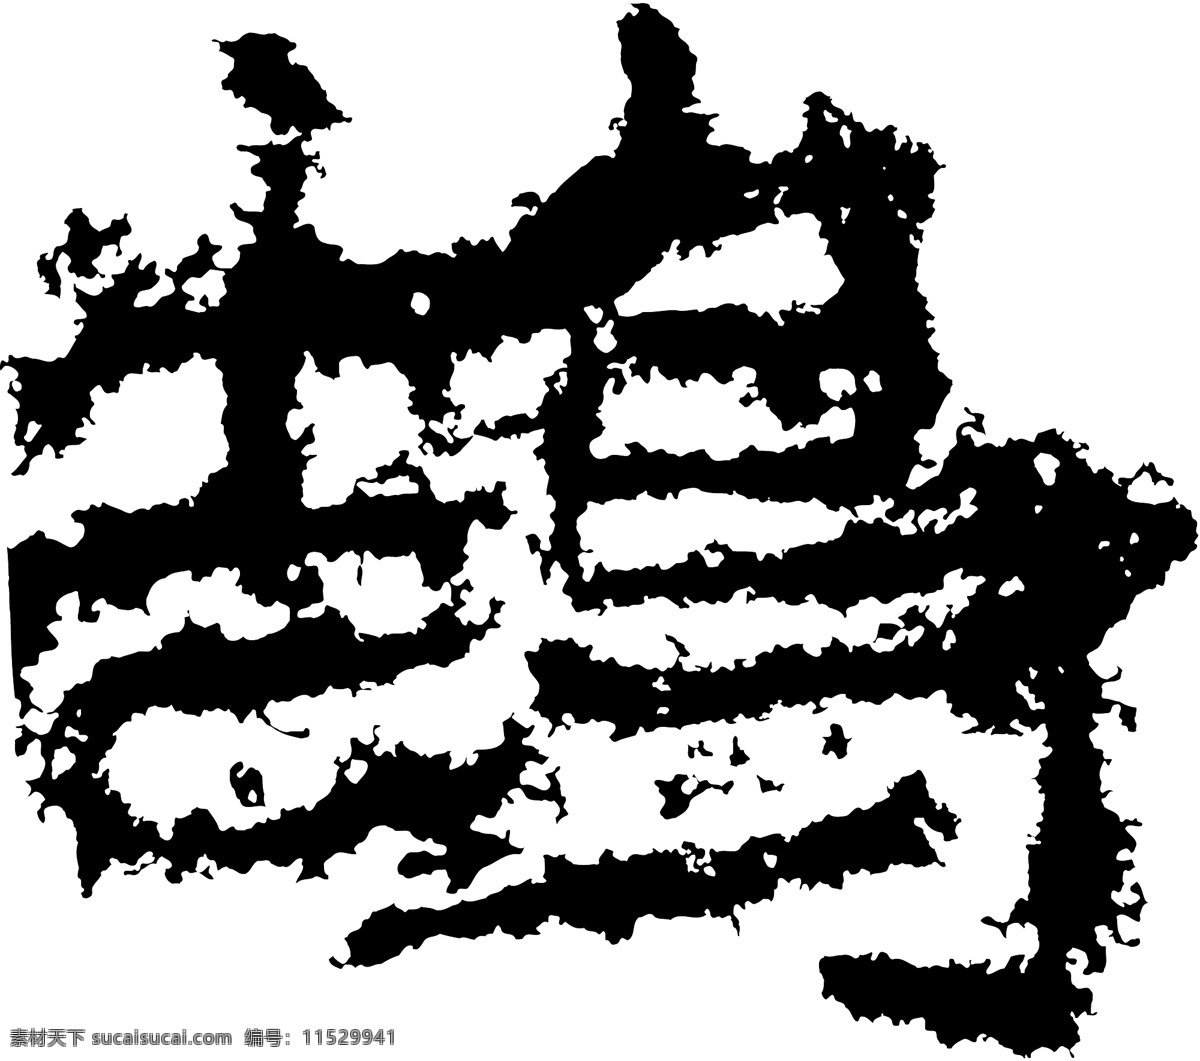 鵠鹄 书法 汉字 十八画 传统艺术 矢量 格式 ai格式 设计素材 十八画字 瀚墨宝典 矢量图库 白色